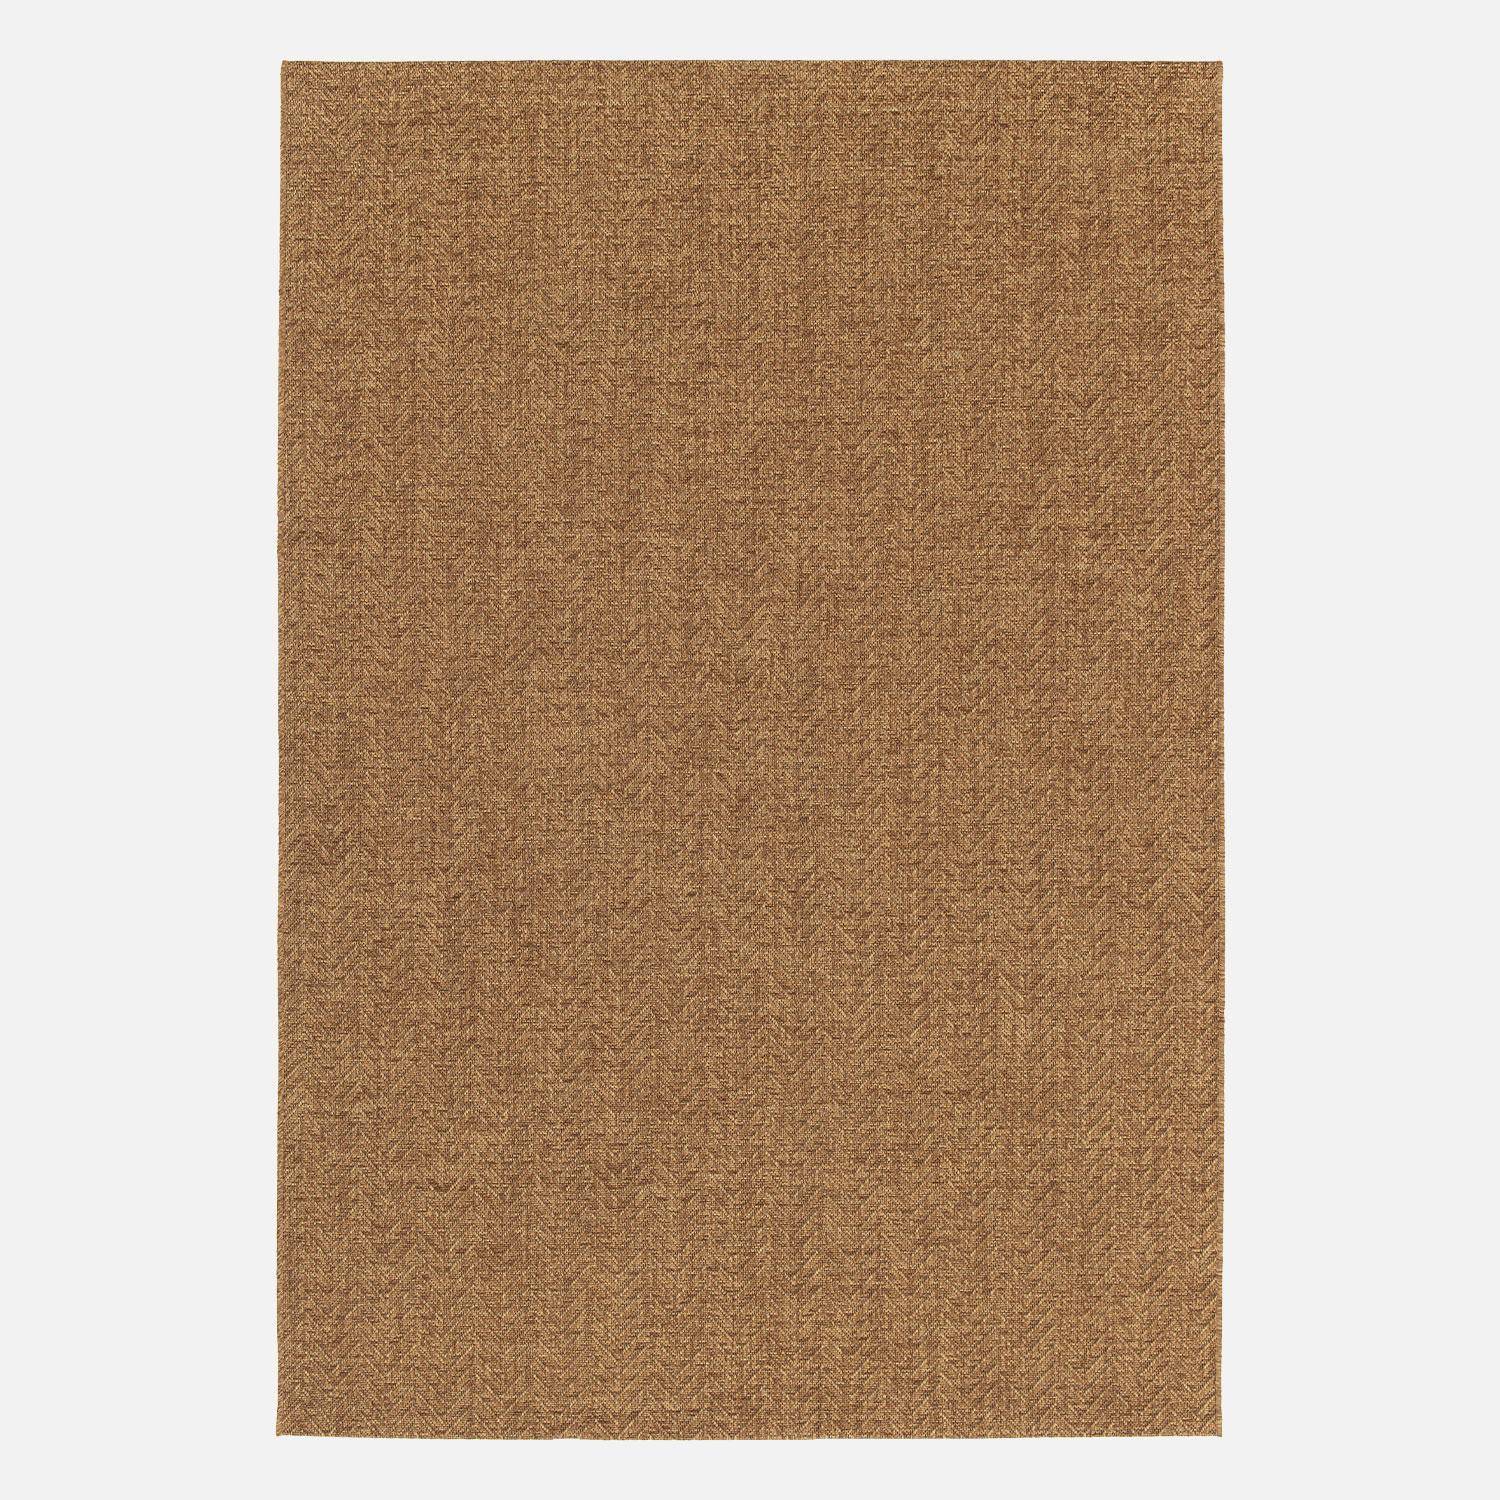 Jute-effect indoor/outdoor carpet in caramel, Oliver, 120 x 170 cm,sweeek,Photo3